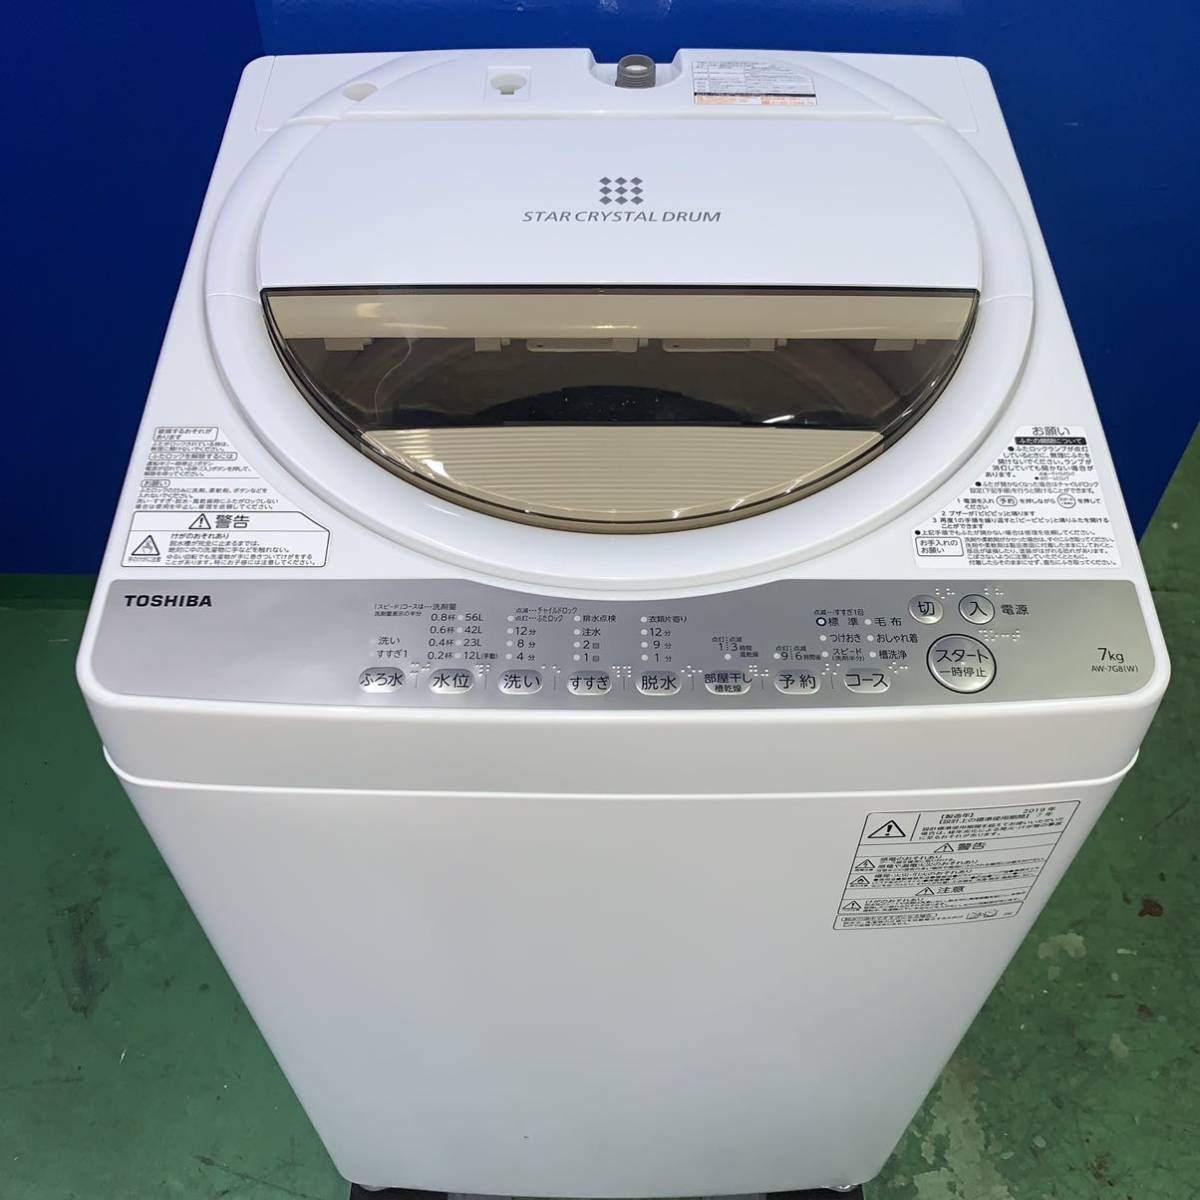 とっておきし福袋 ◆TOSHIBA◆全自動洗濯機　2019年7kg 大阪市近郊配送無料 5kg以上